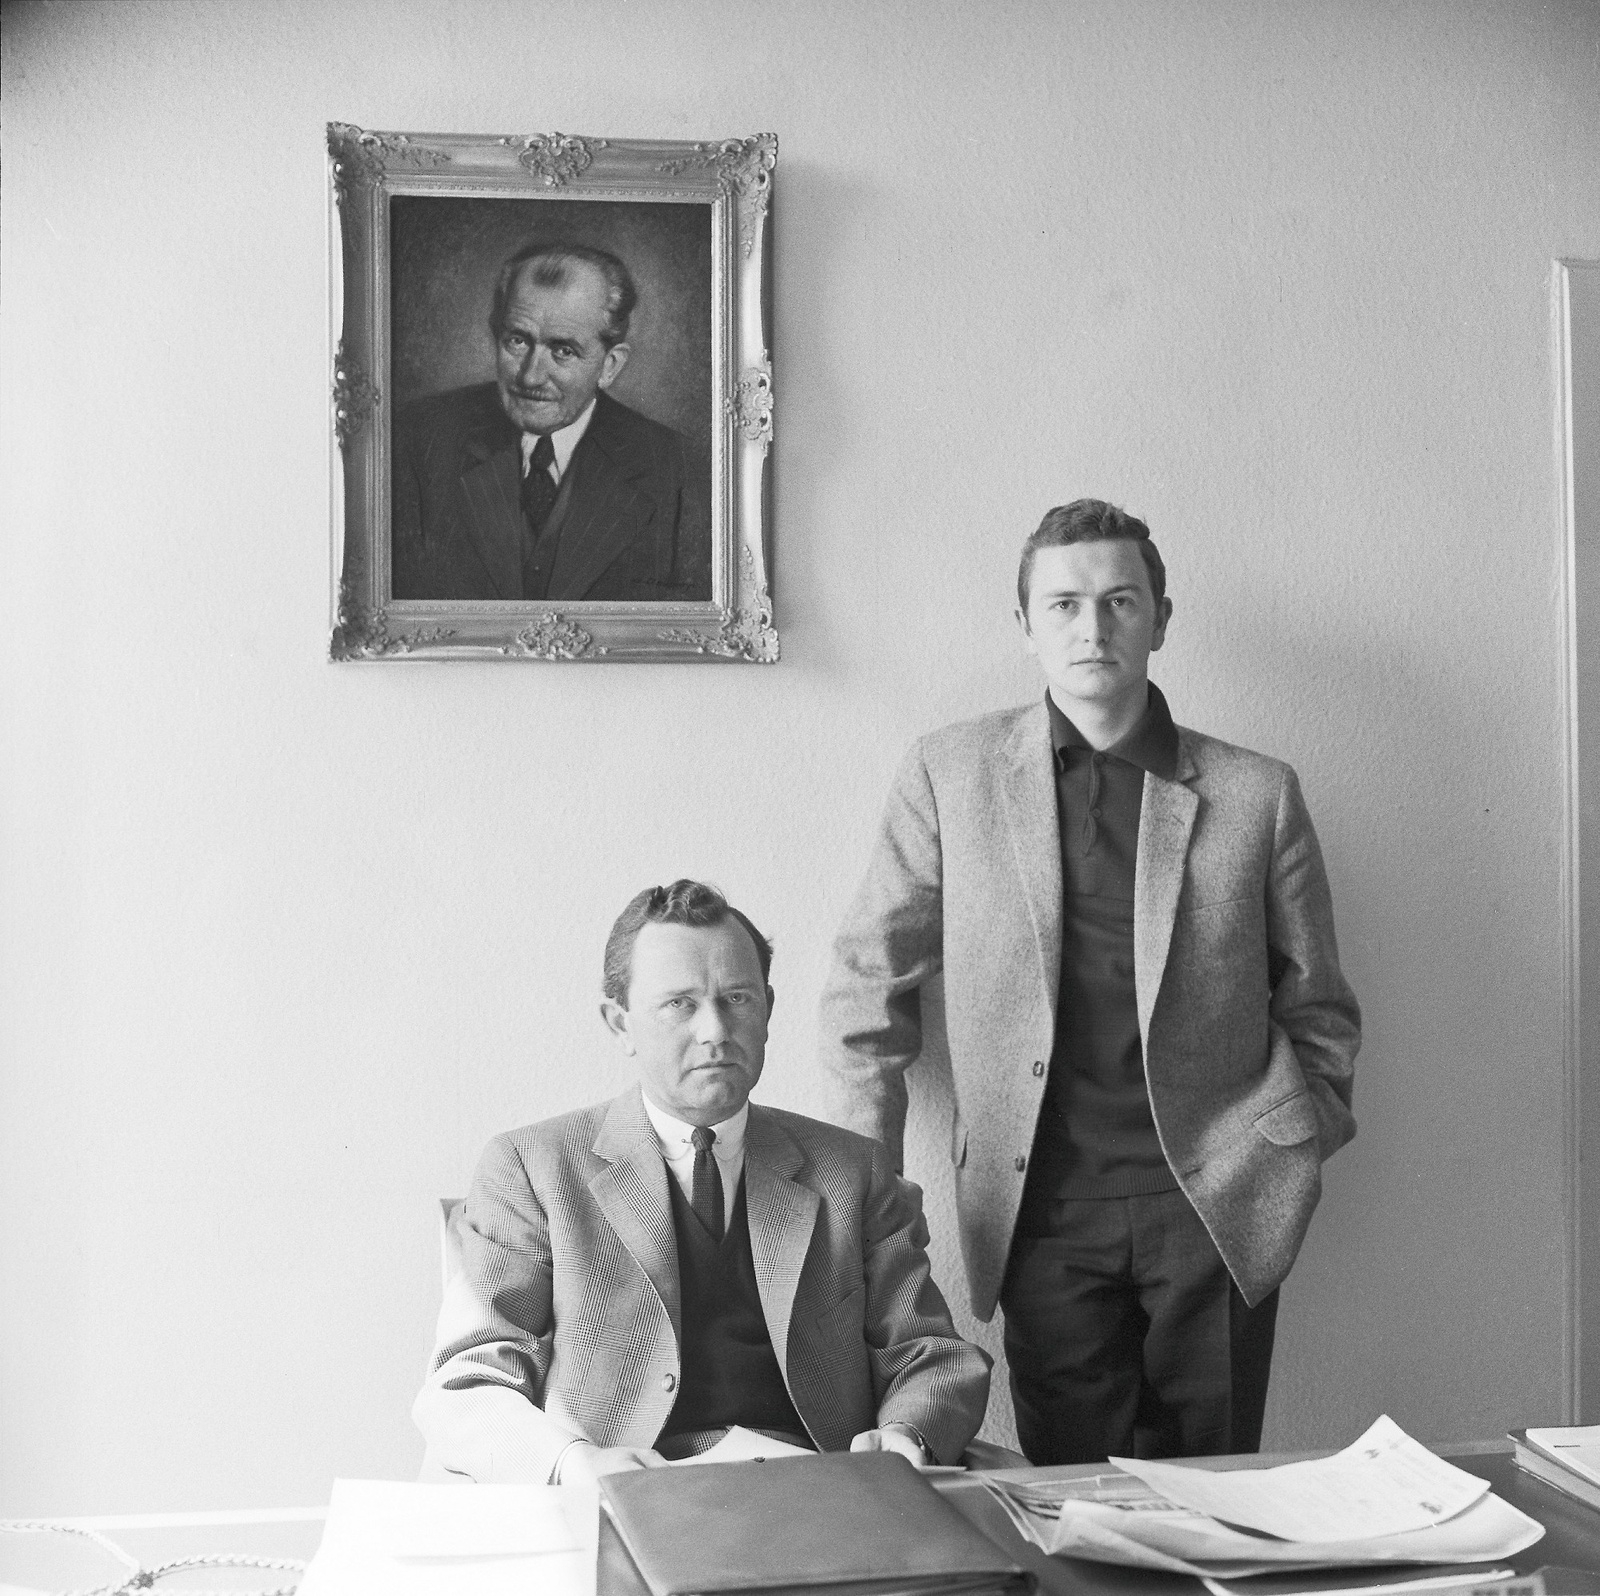 Ferry Porsche och hans son, ”Butzi” kallad, fotograferade cirka 1960. Det var Butzi som designade 911-modellen, vars grundform känns igen även i dagens 911.
Foto: Porsche